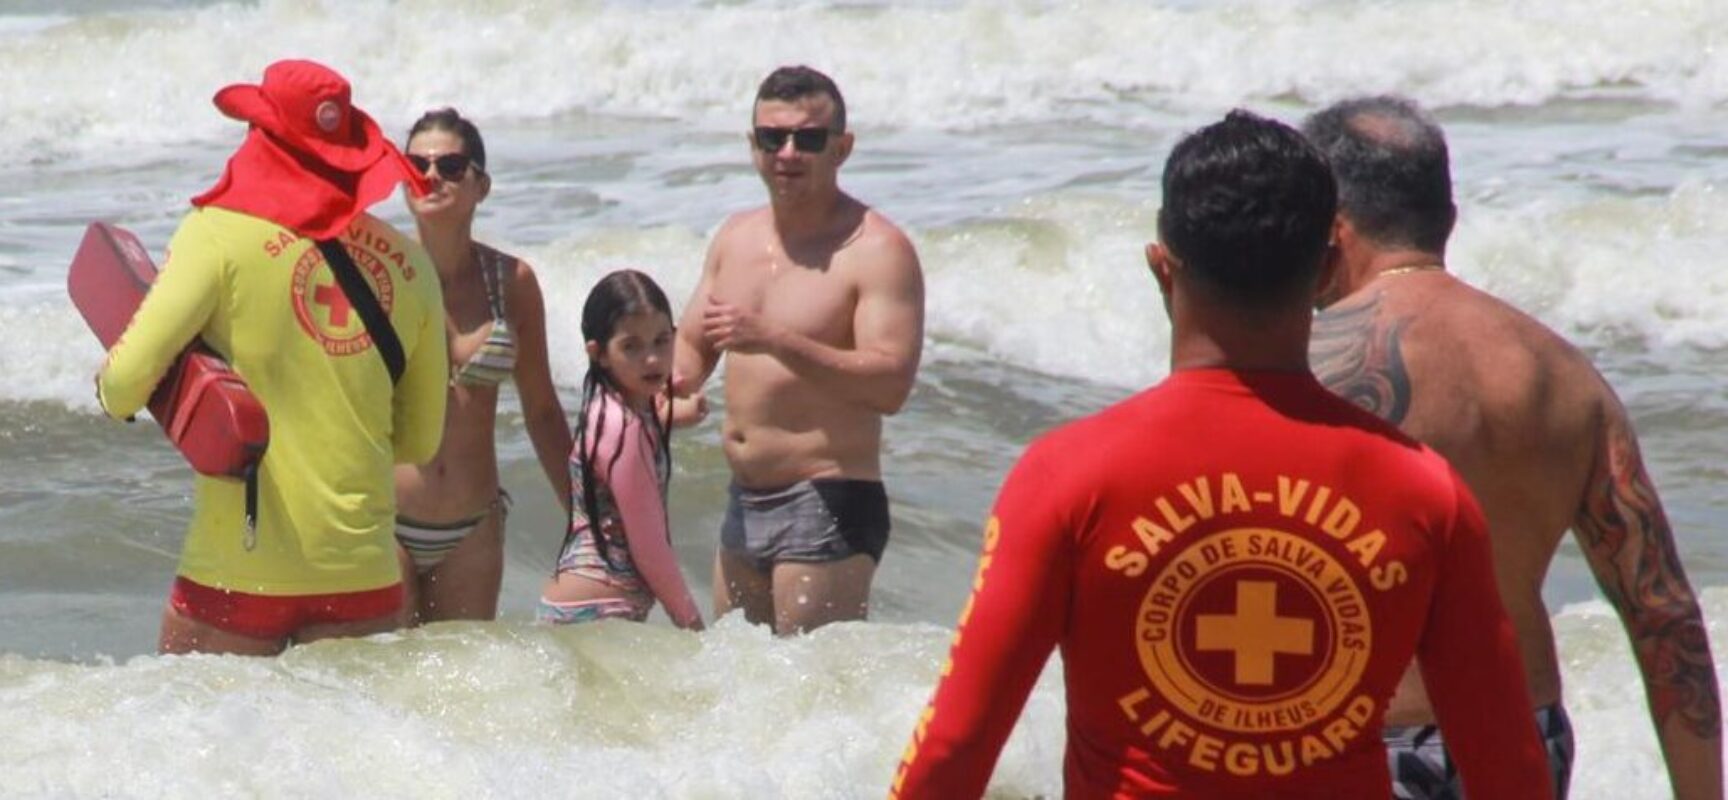 Prefeitura intensifica ações preventivas nas praias de Ilhéus durante feriado do Dia das Crianças